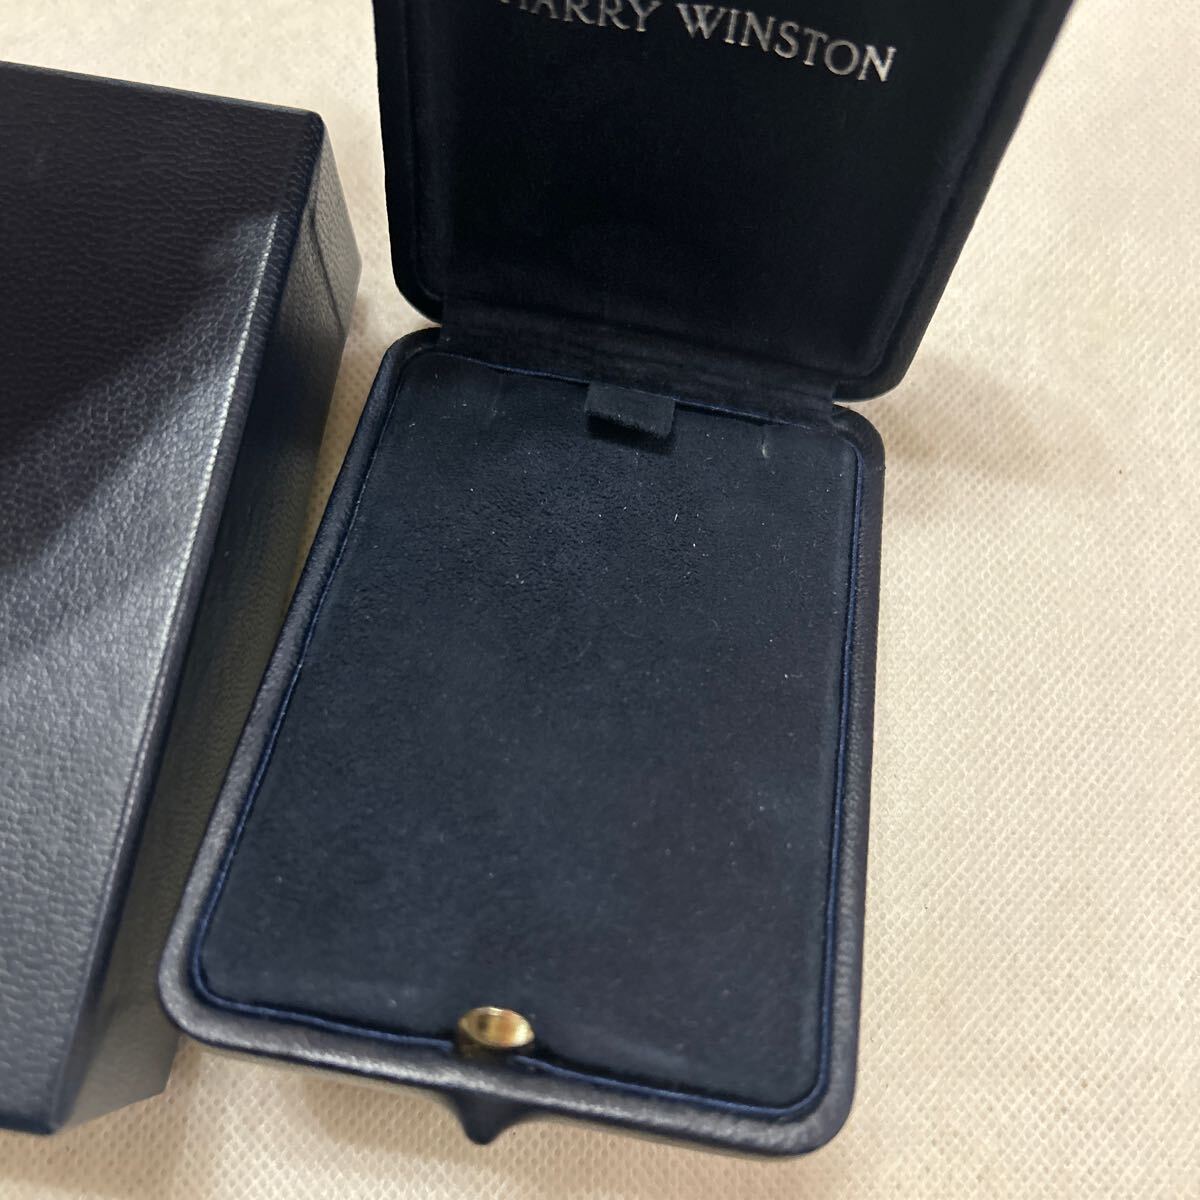  Harry Winston колье пустой коробка harry winston кейс BOX пустой коробка коробка колье кейс кейс для украшений ювелирные изделия кейс 